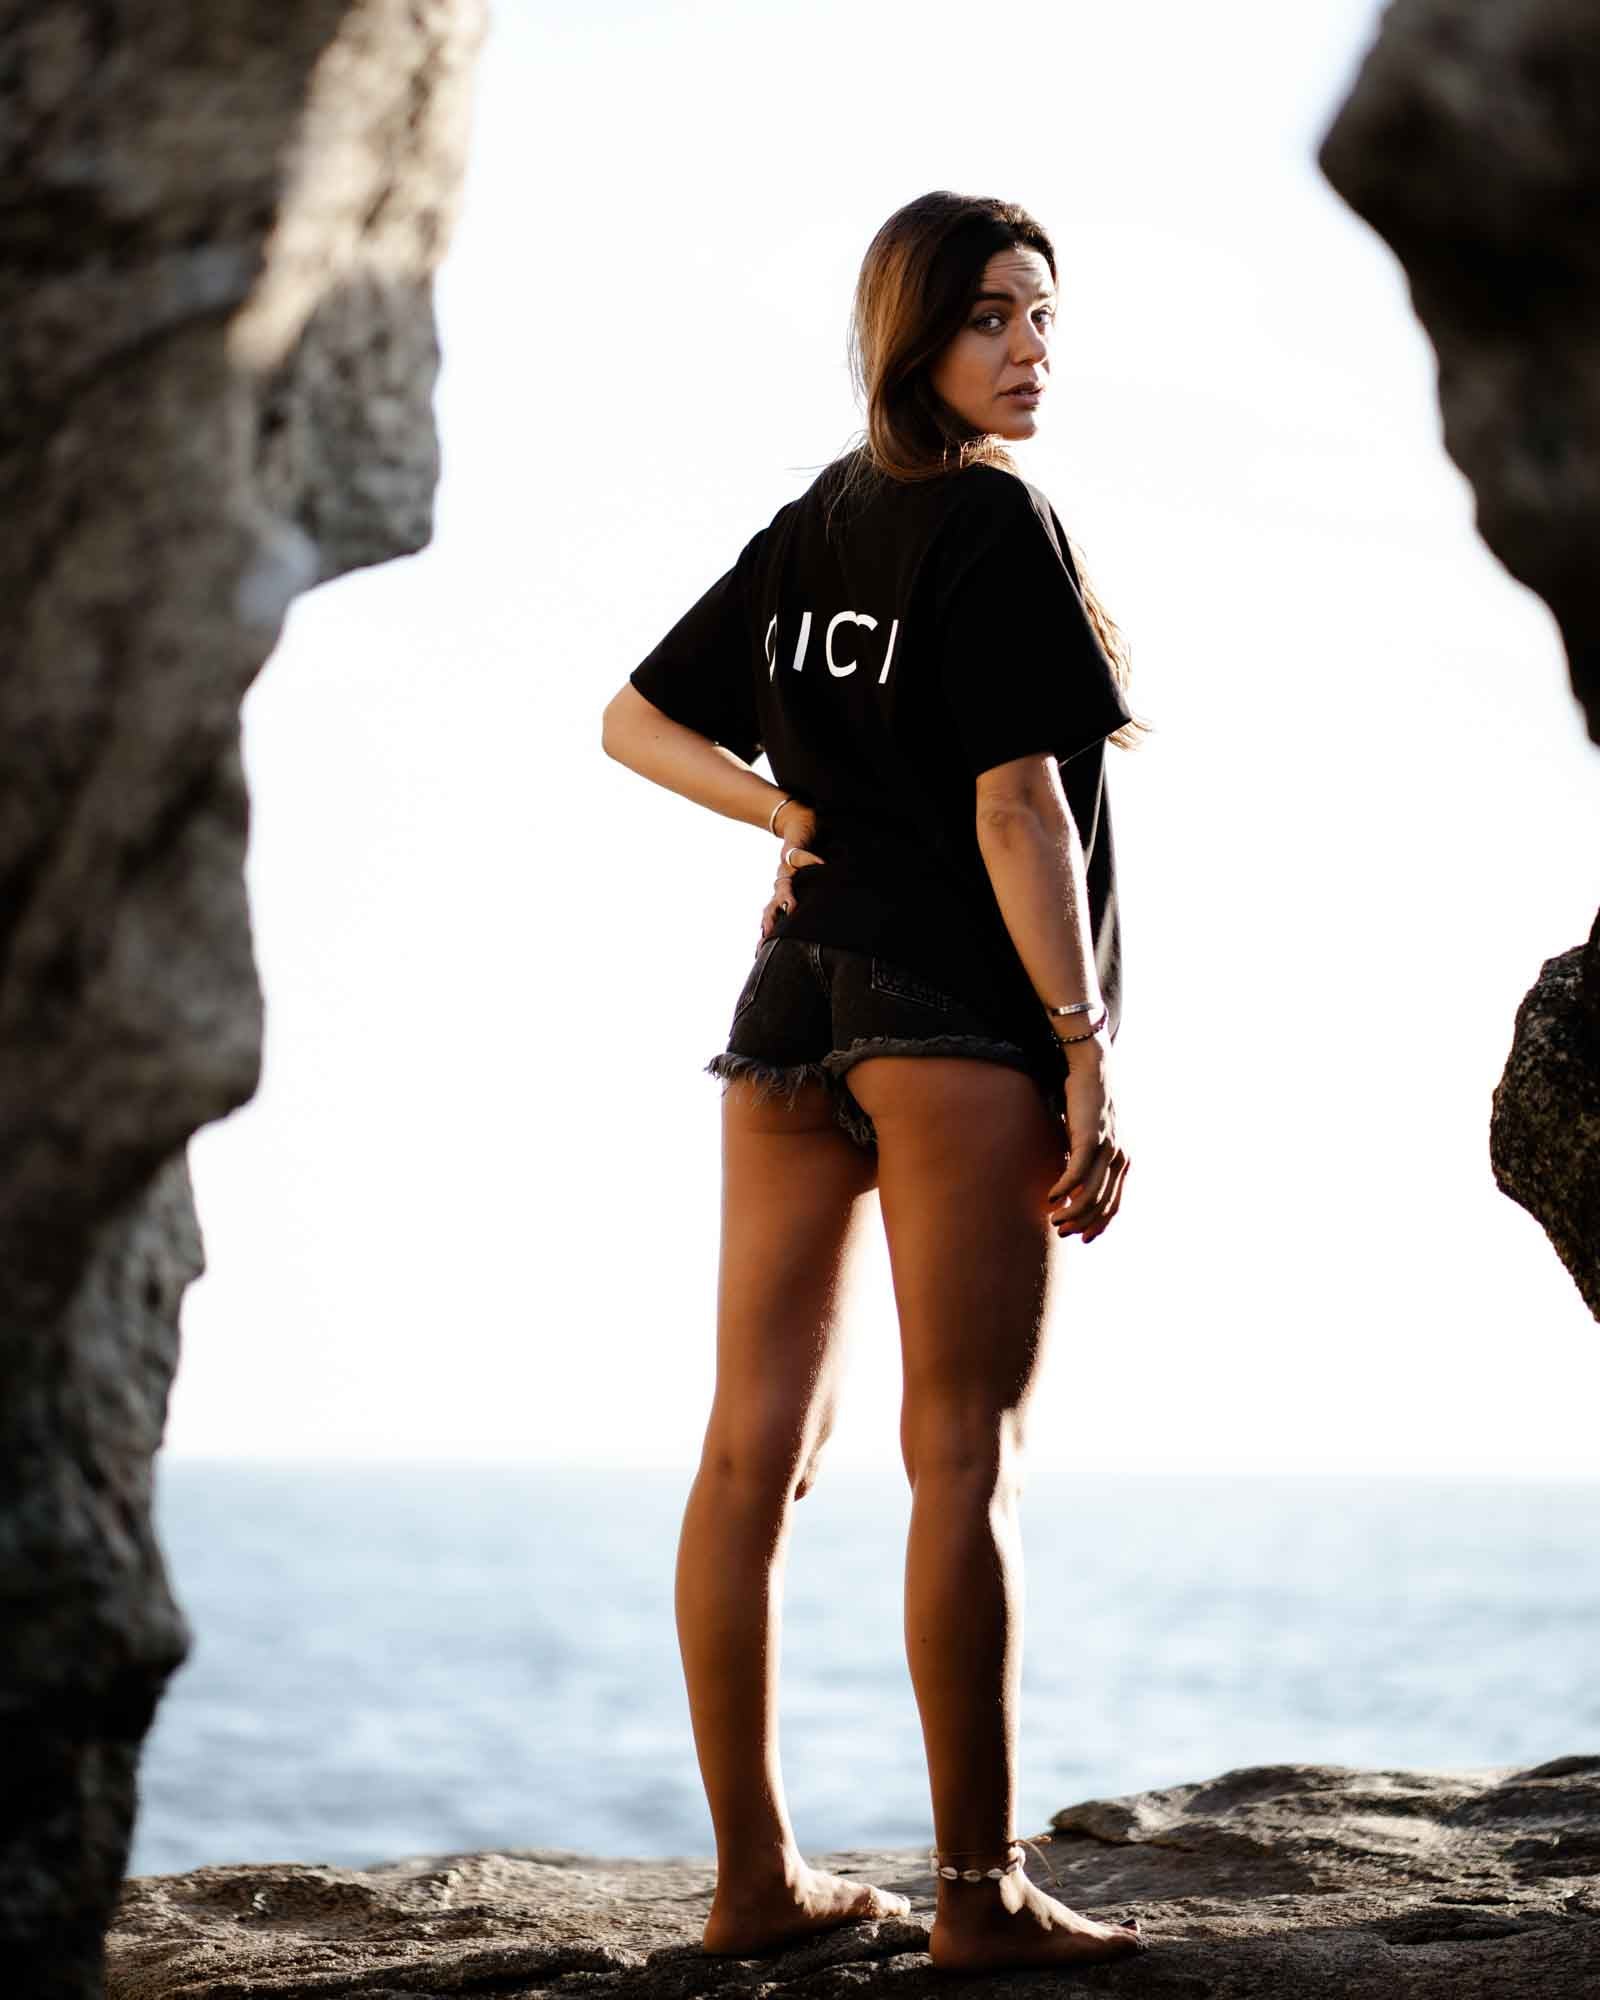 Camiseta Oversize Negra en el cuerpo de la modelo - Camisetas Dicci Básicas estilo Oversize - Ropa Online - Dicci